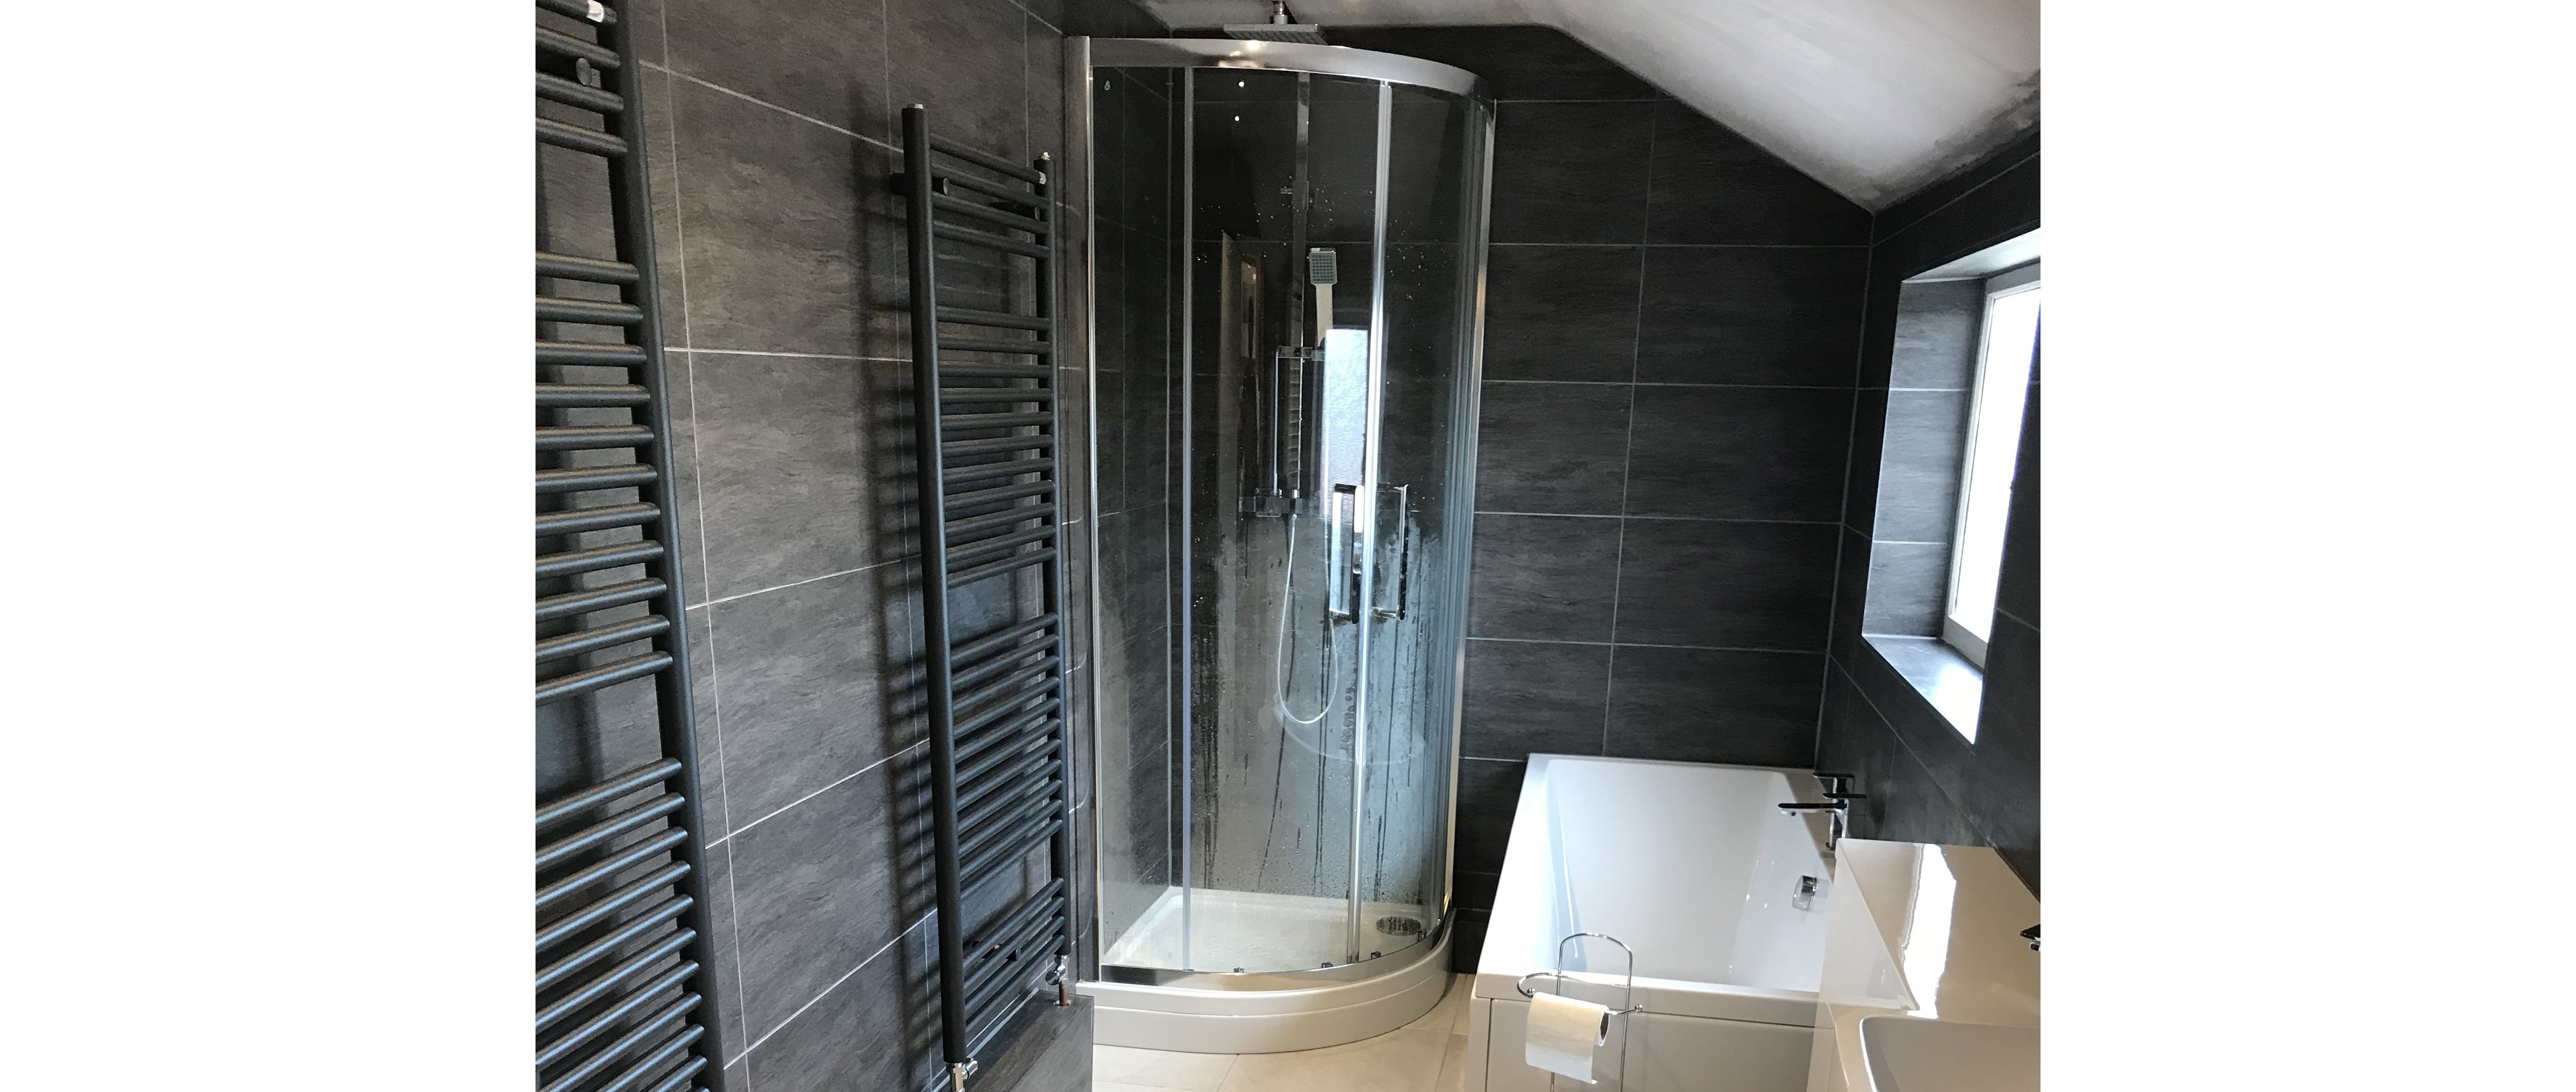 angular bathtub in modern bathroom